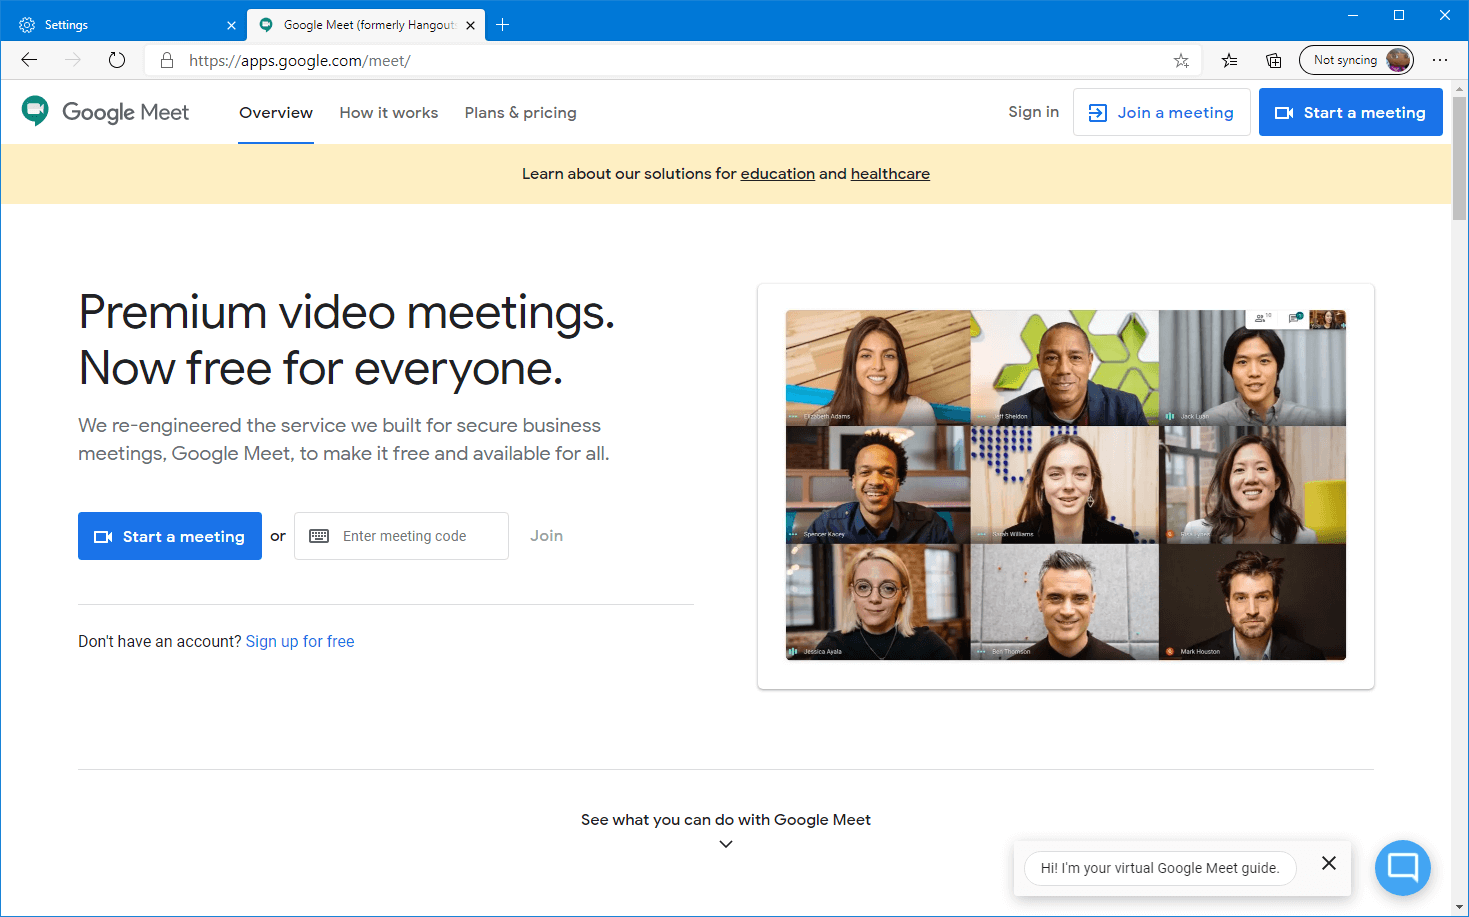 Hướng dẫn cách thay background trong Google Meet cực kỳ đẹp mắt